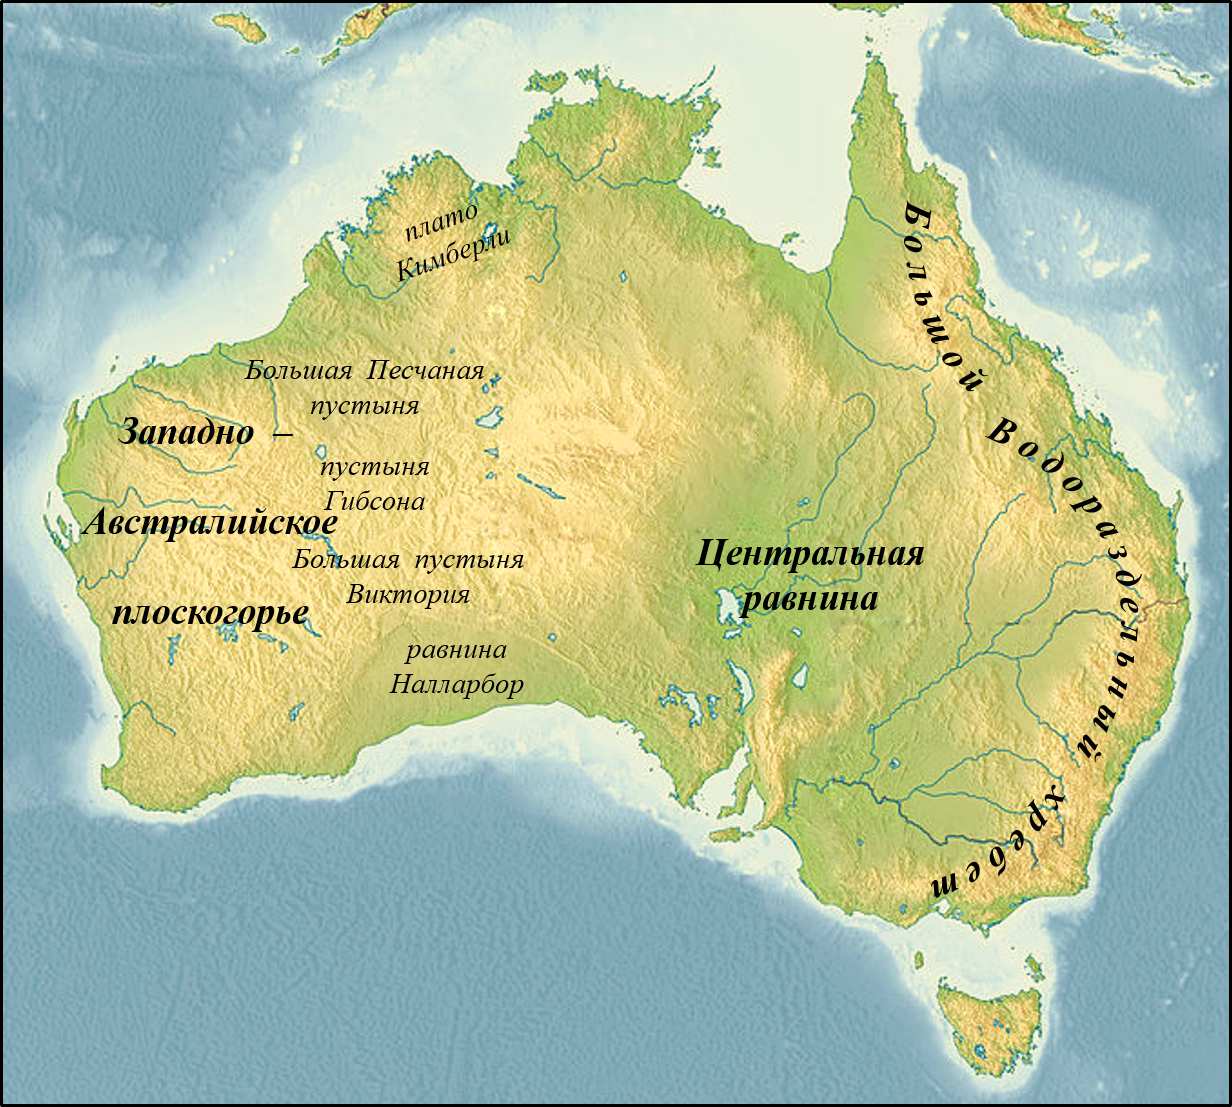 На контурной карте нанести рельеф австралии